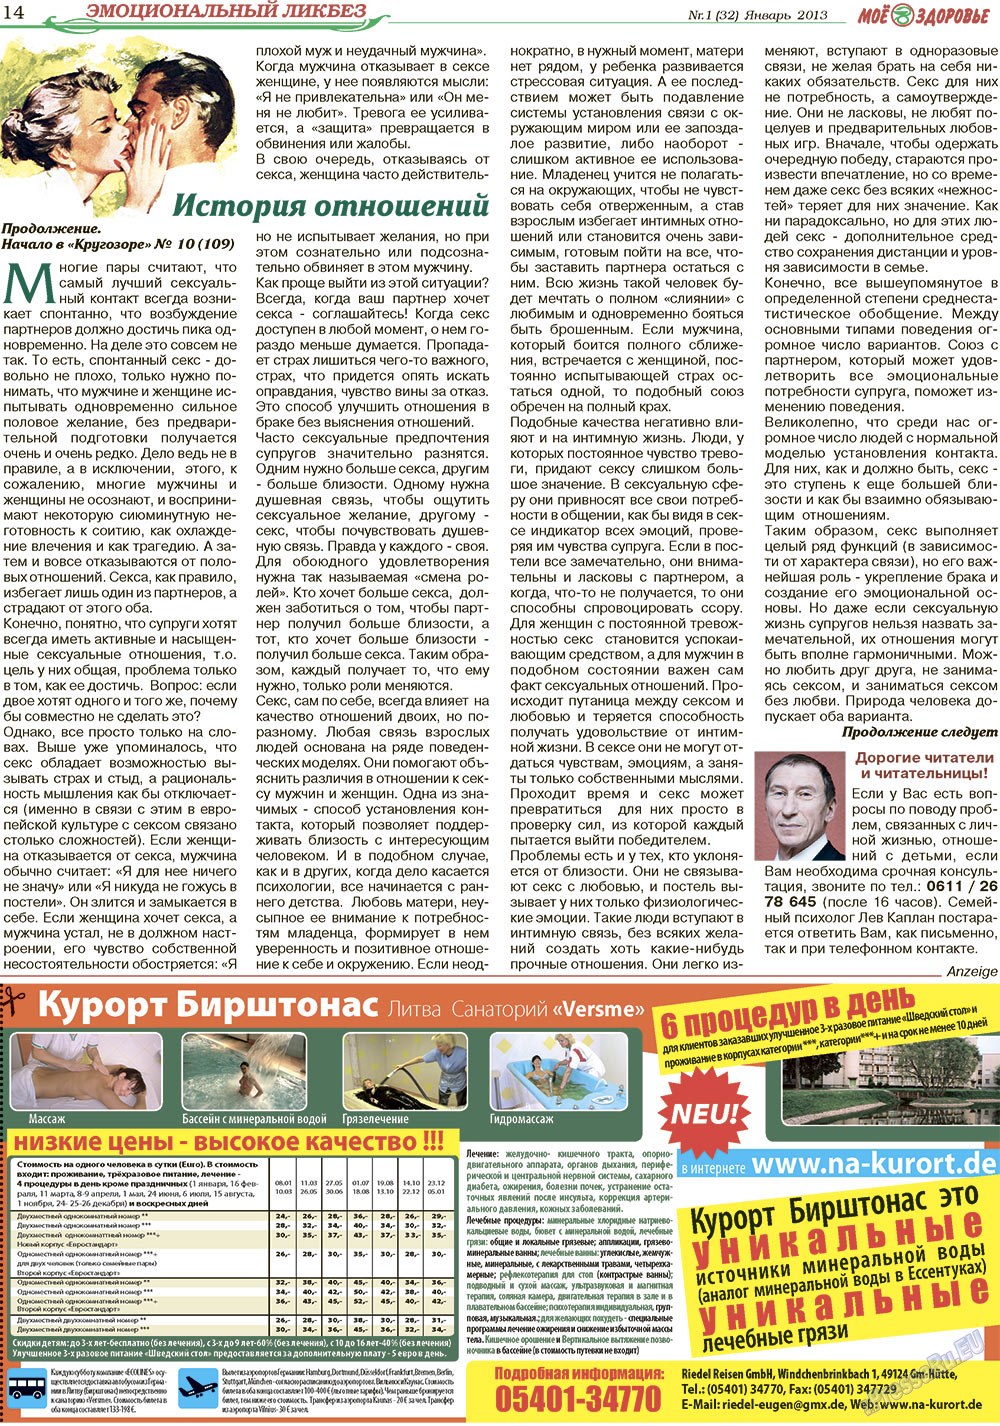 Кругозор, газета. 2013 №1 стр.14